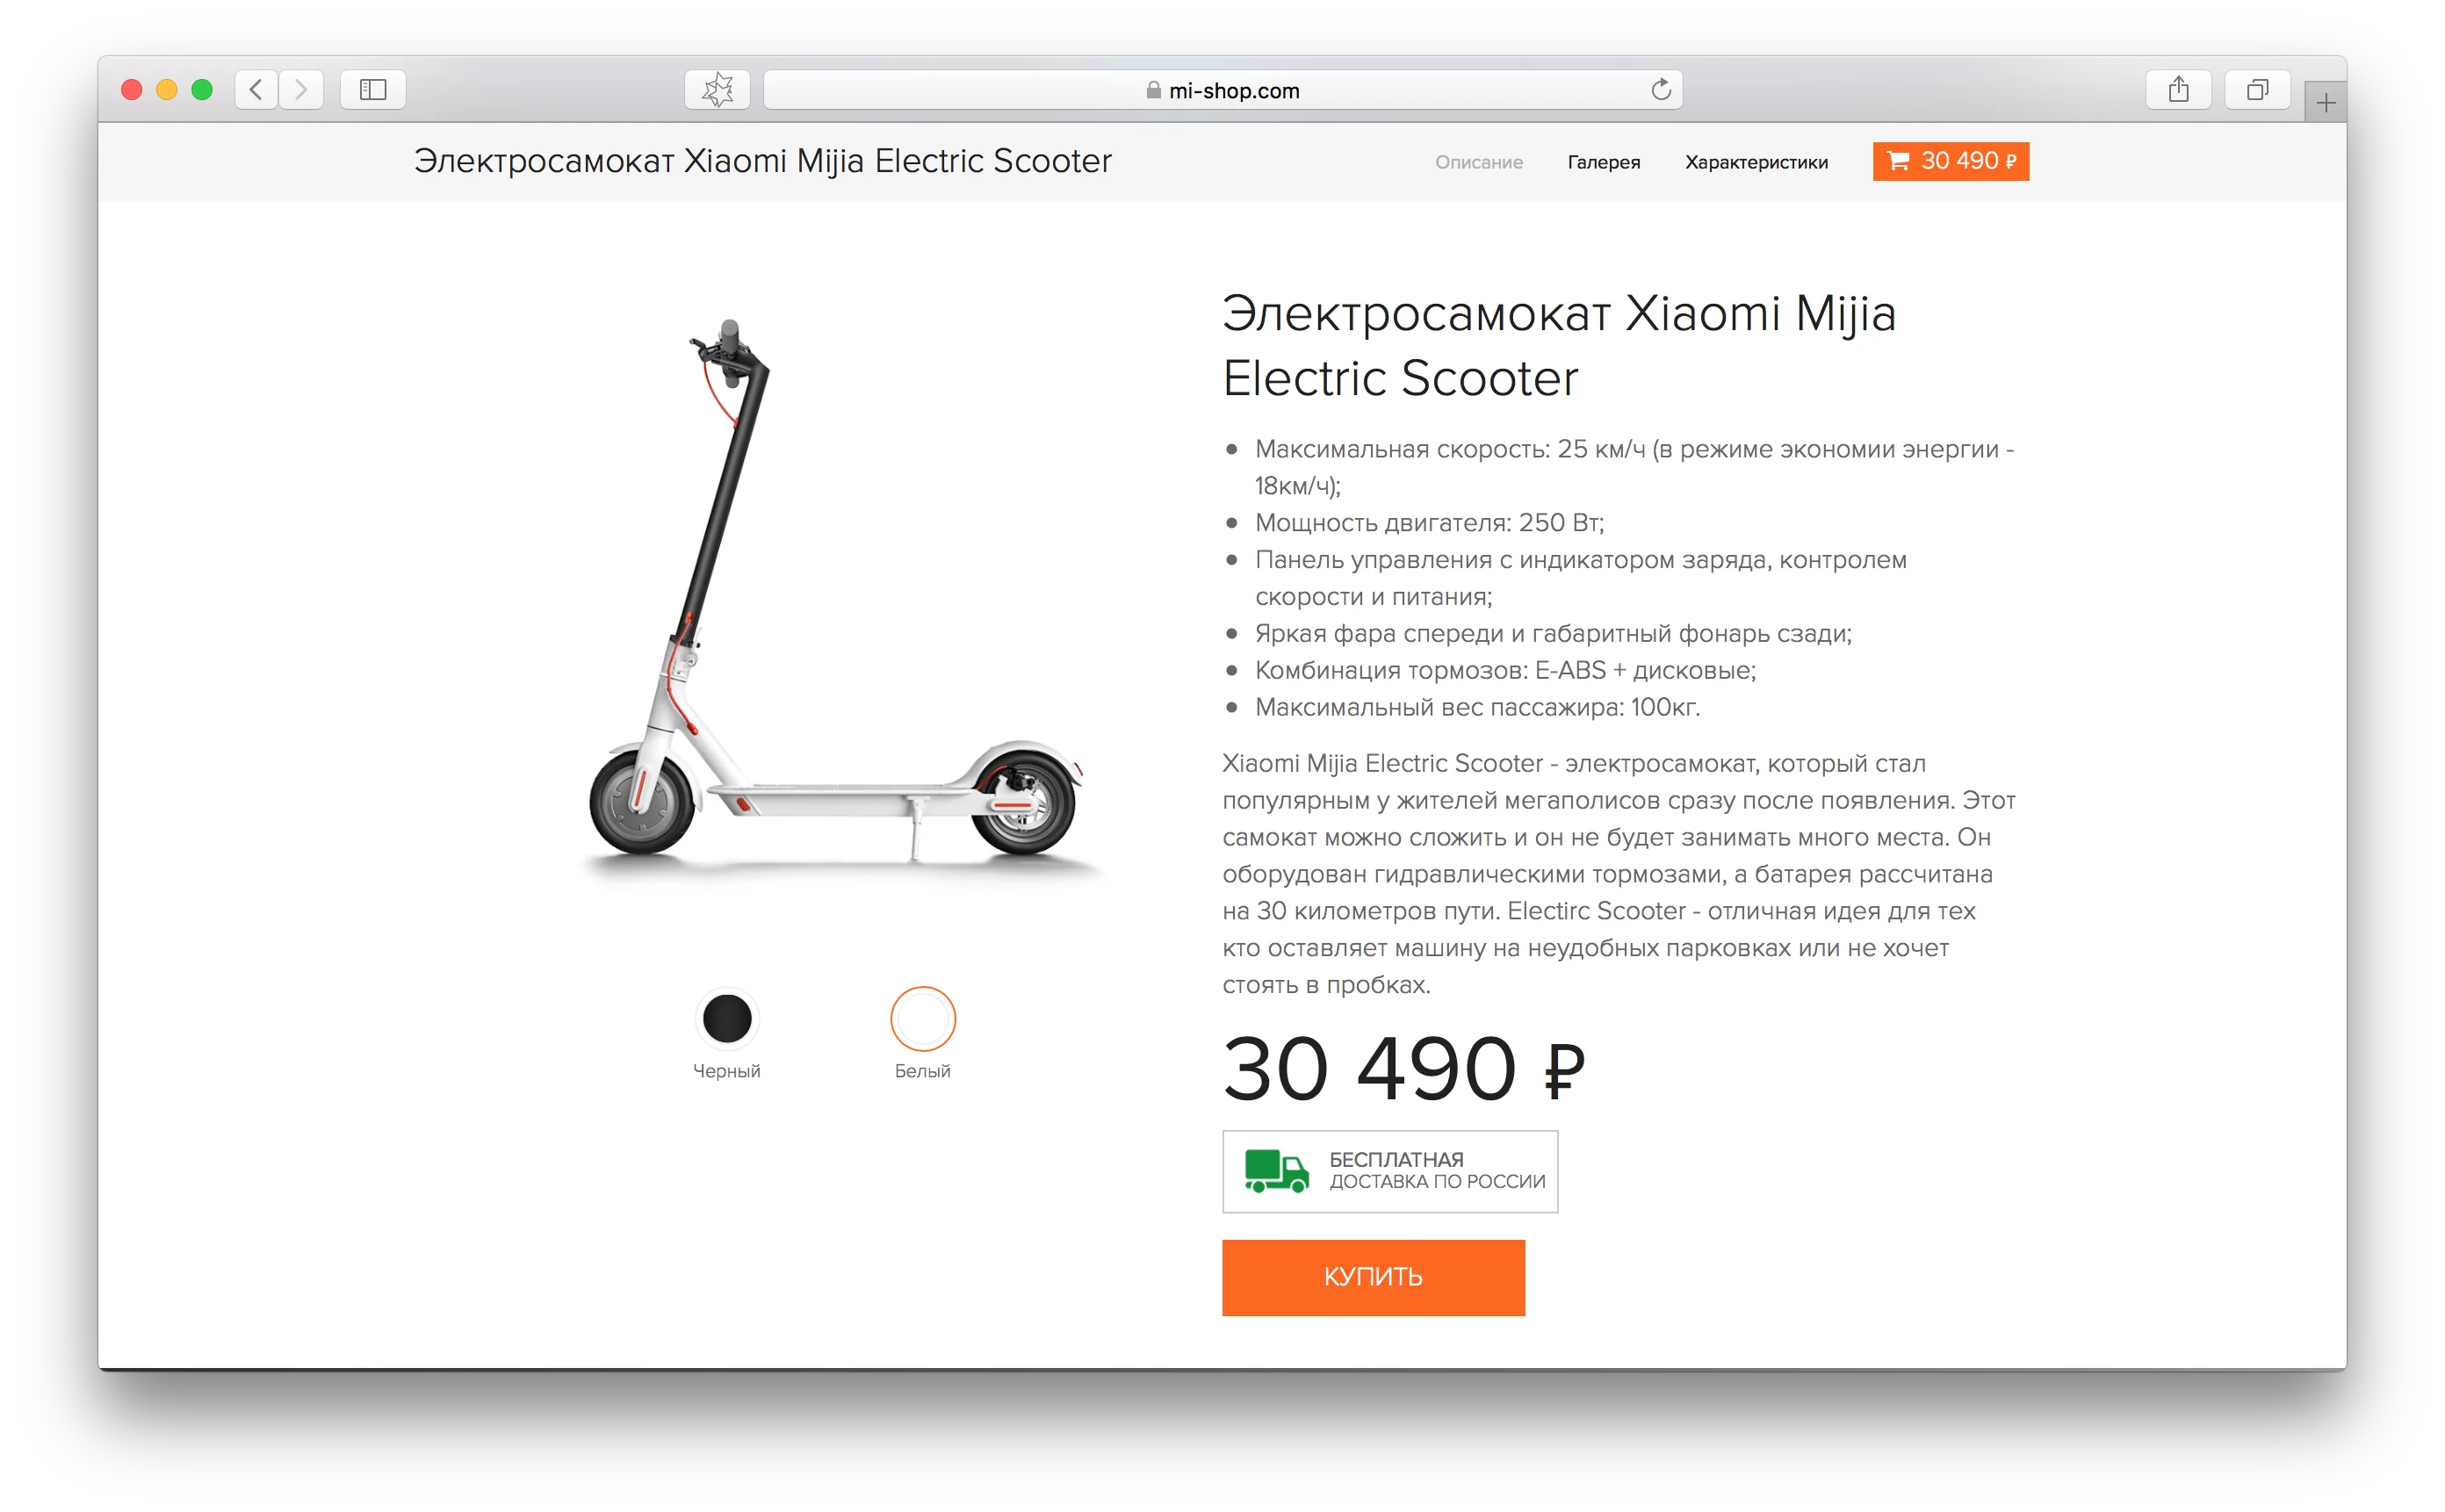 Дорого! В России официально продается электросамокат от Xiaomi - фото 1